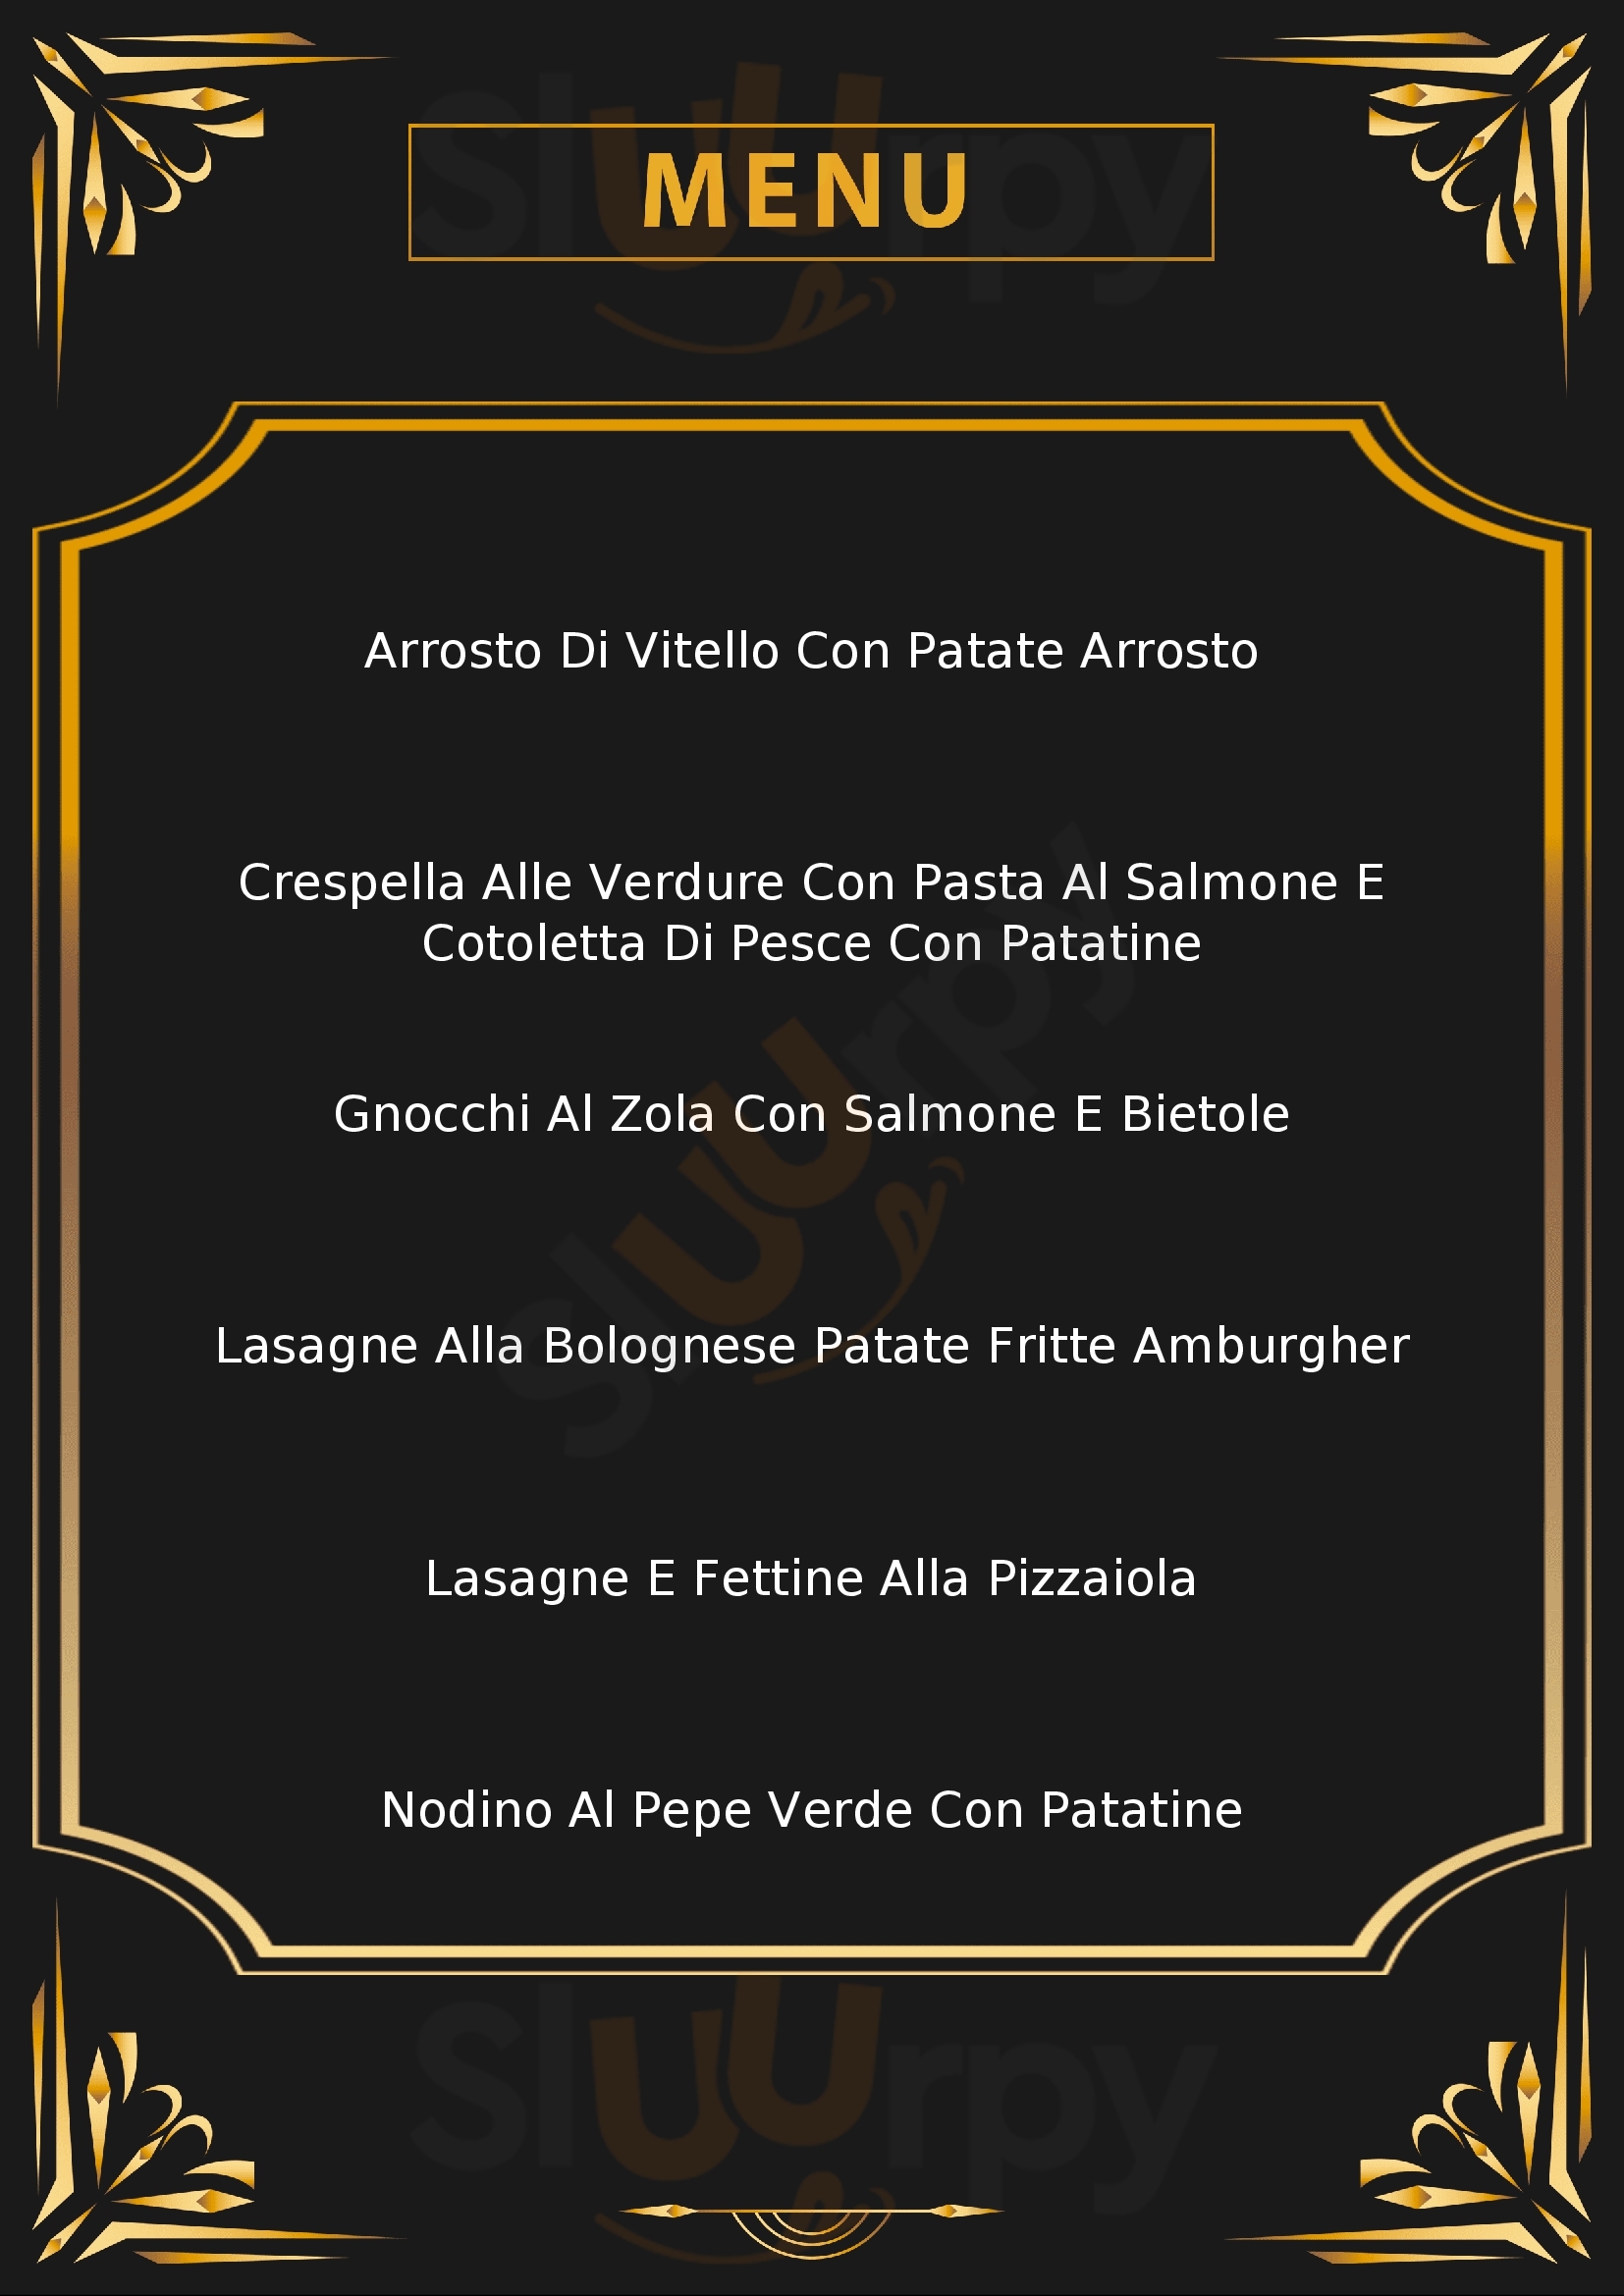 Top Gourmet Montano Lucino menù 1 pagina